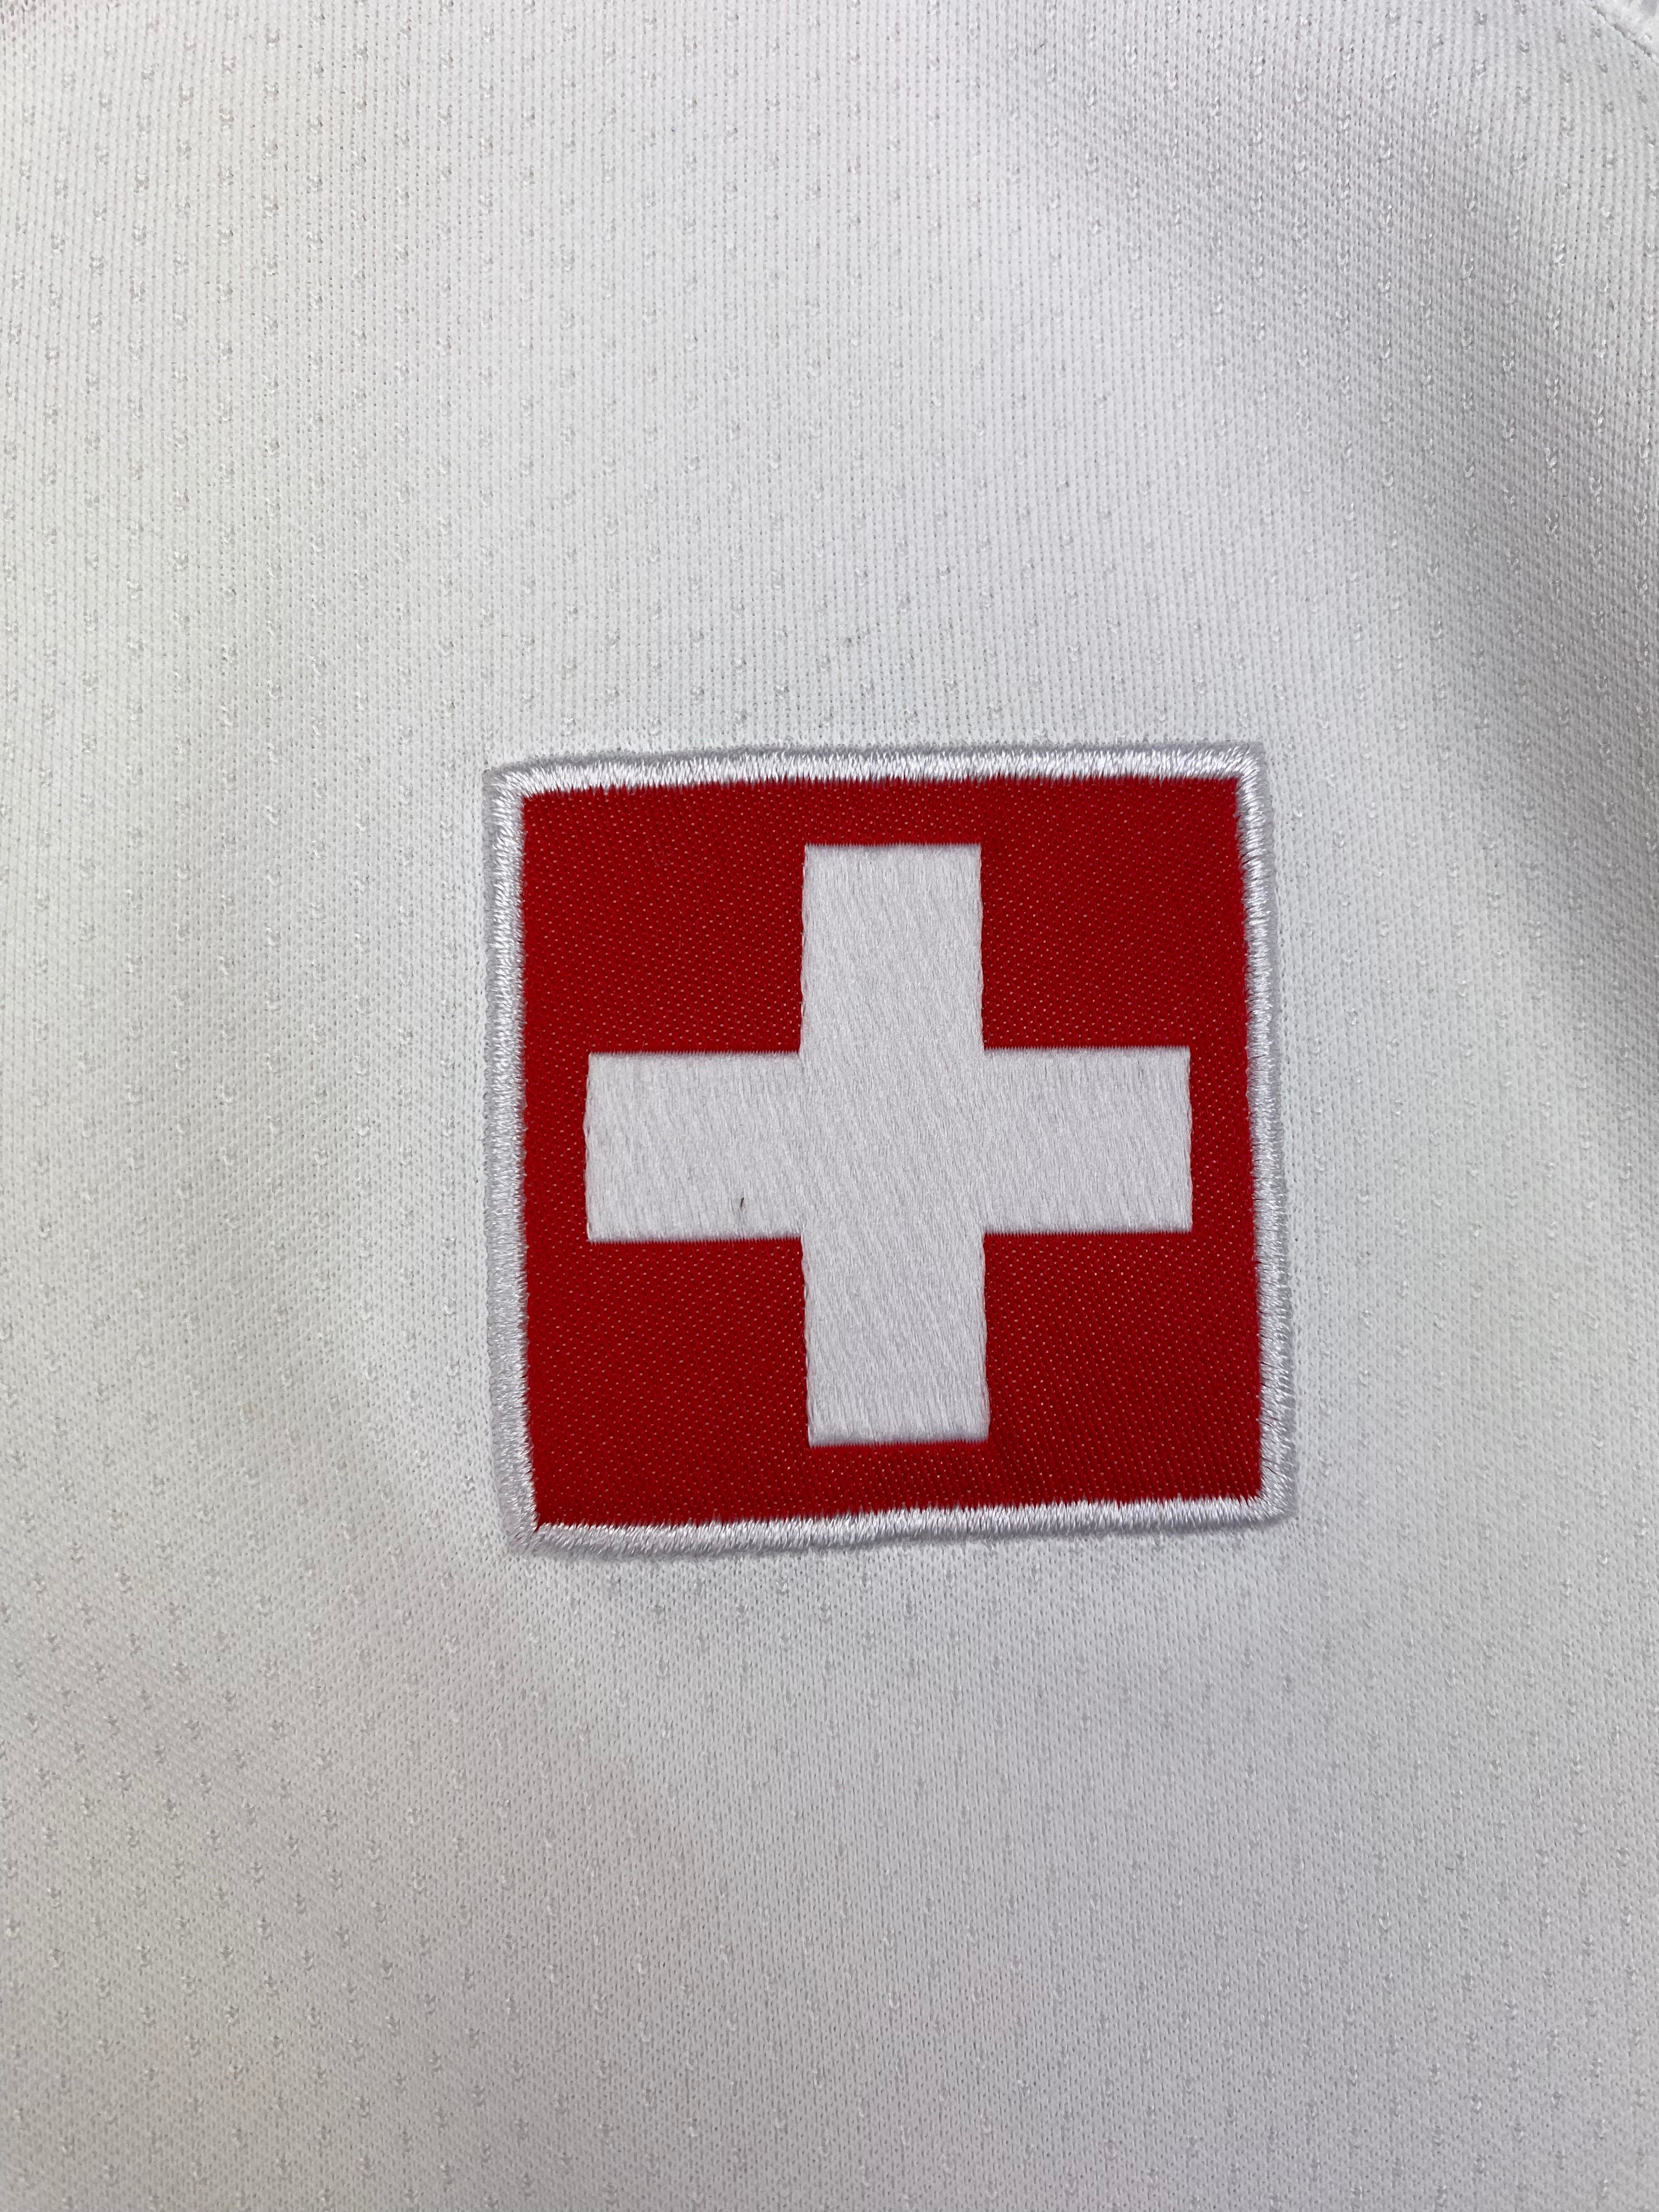 Camiseta visitante Suiza 2018/19 (M) 9/10